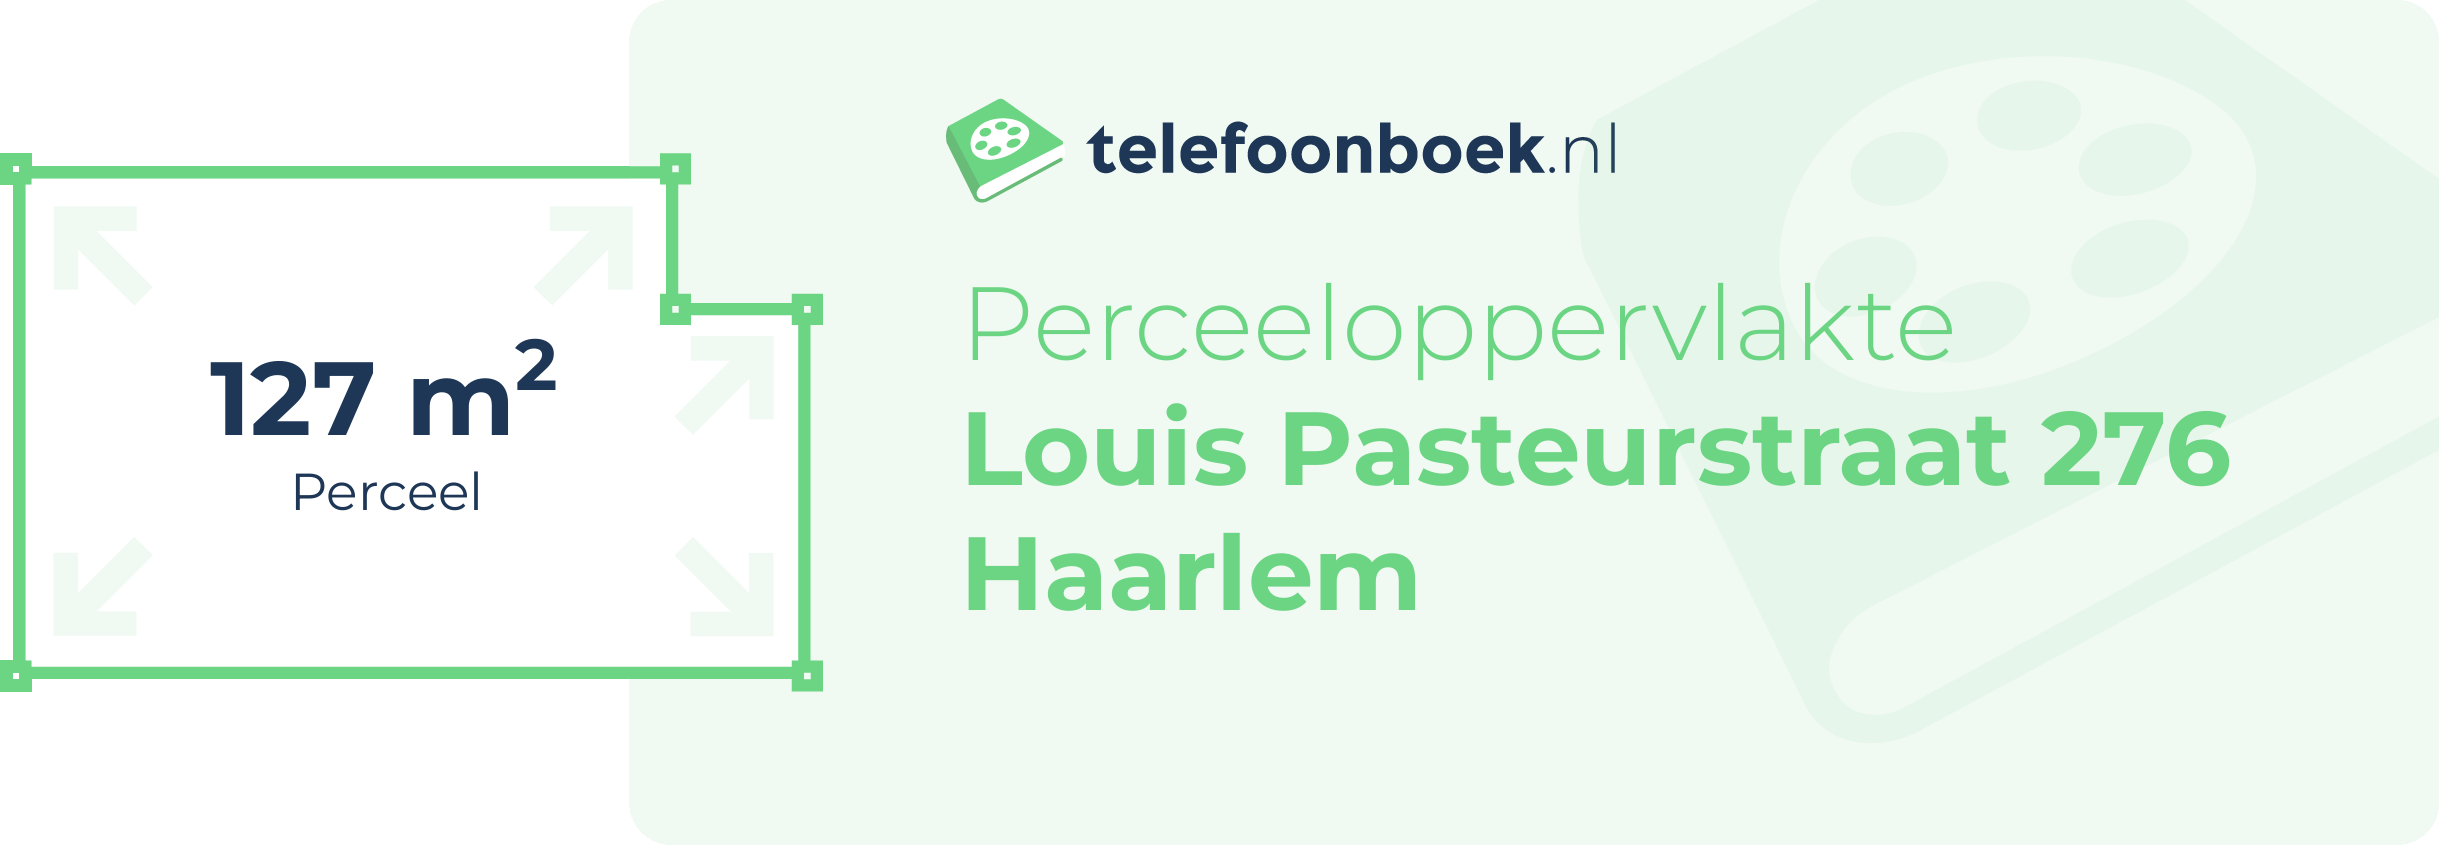 Perceeloppervlakte Louis Pasteurstraat 276 Haarlem